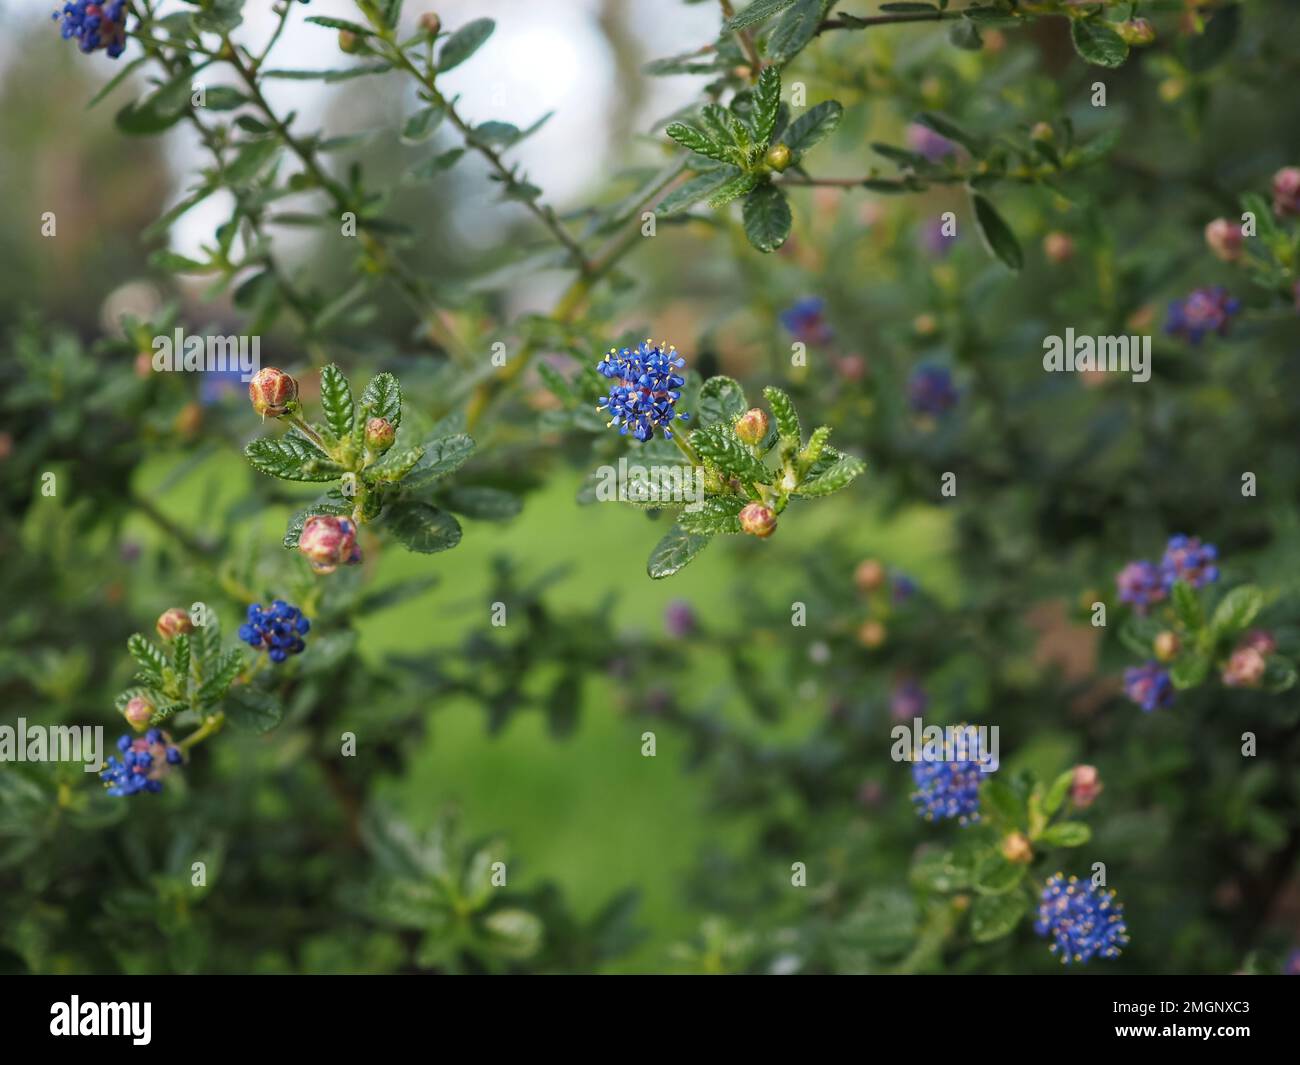 Gros plan d'un seul groupe de fleurs 'Puget Blue' Ceanothus impressus espacé par intermittence sur des branches aérées (faible profondeur de champ) en Angleterre Banque D'Images